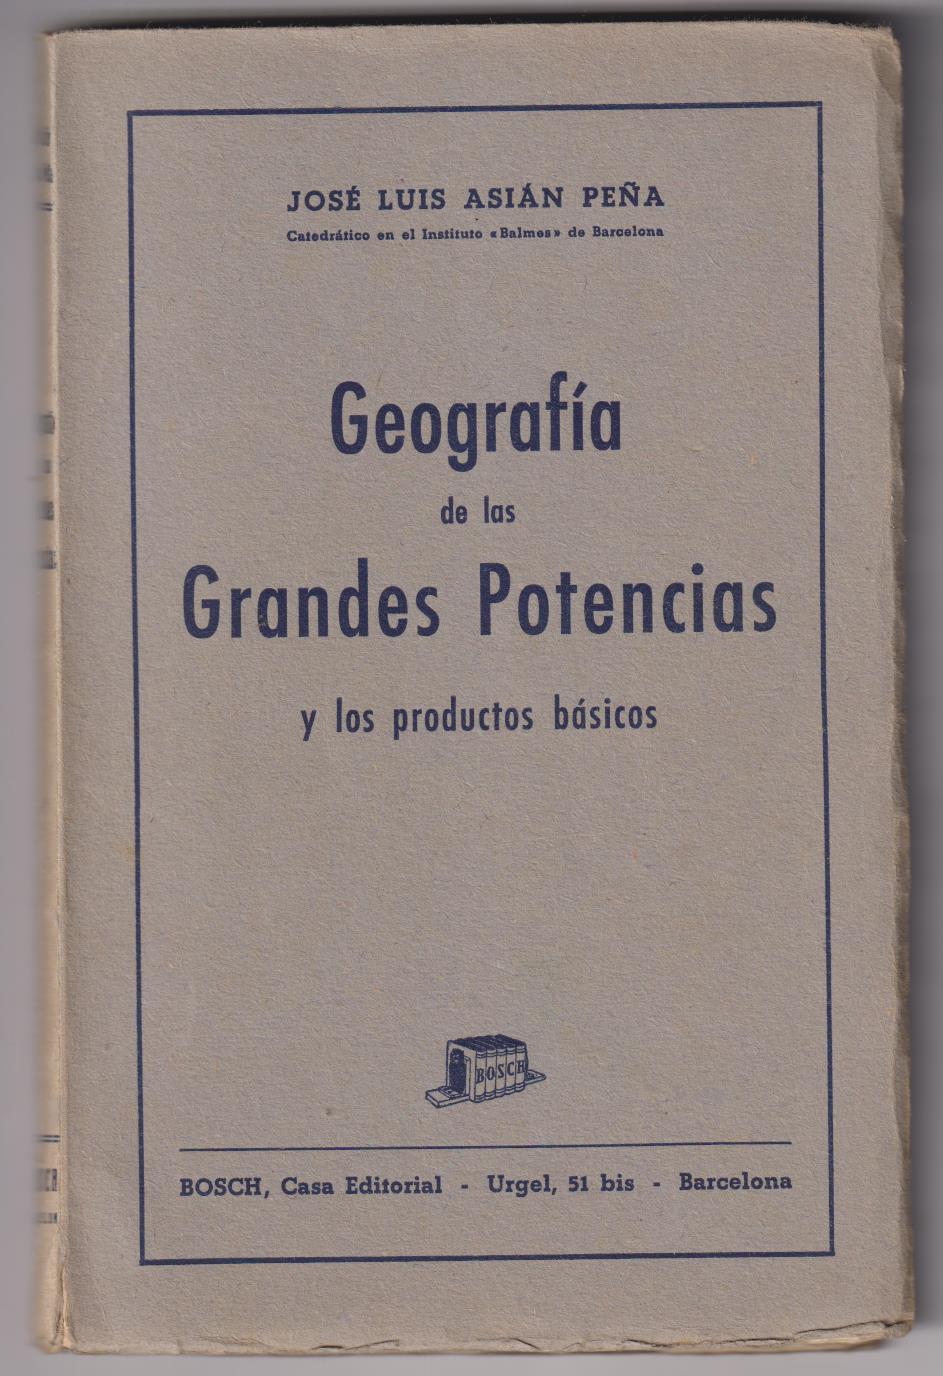 Geografía de Las Grandes Potencias. José Luis Asián Peña. Editorial Bosch 1947